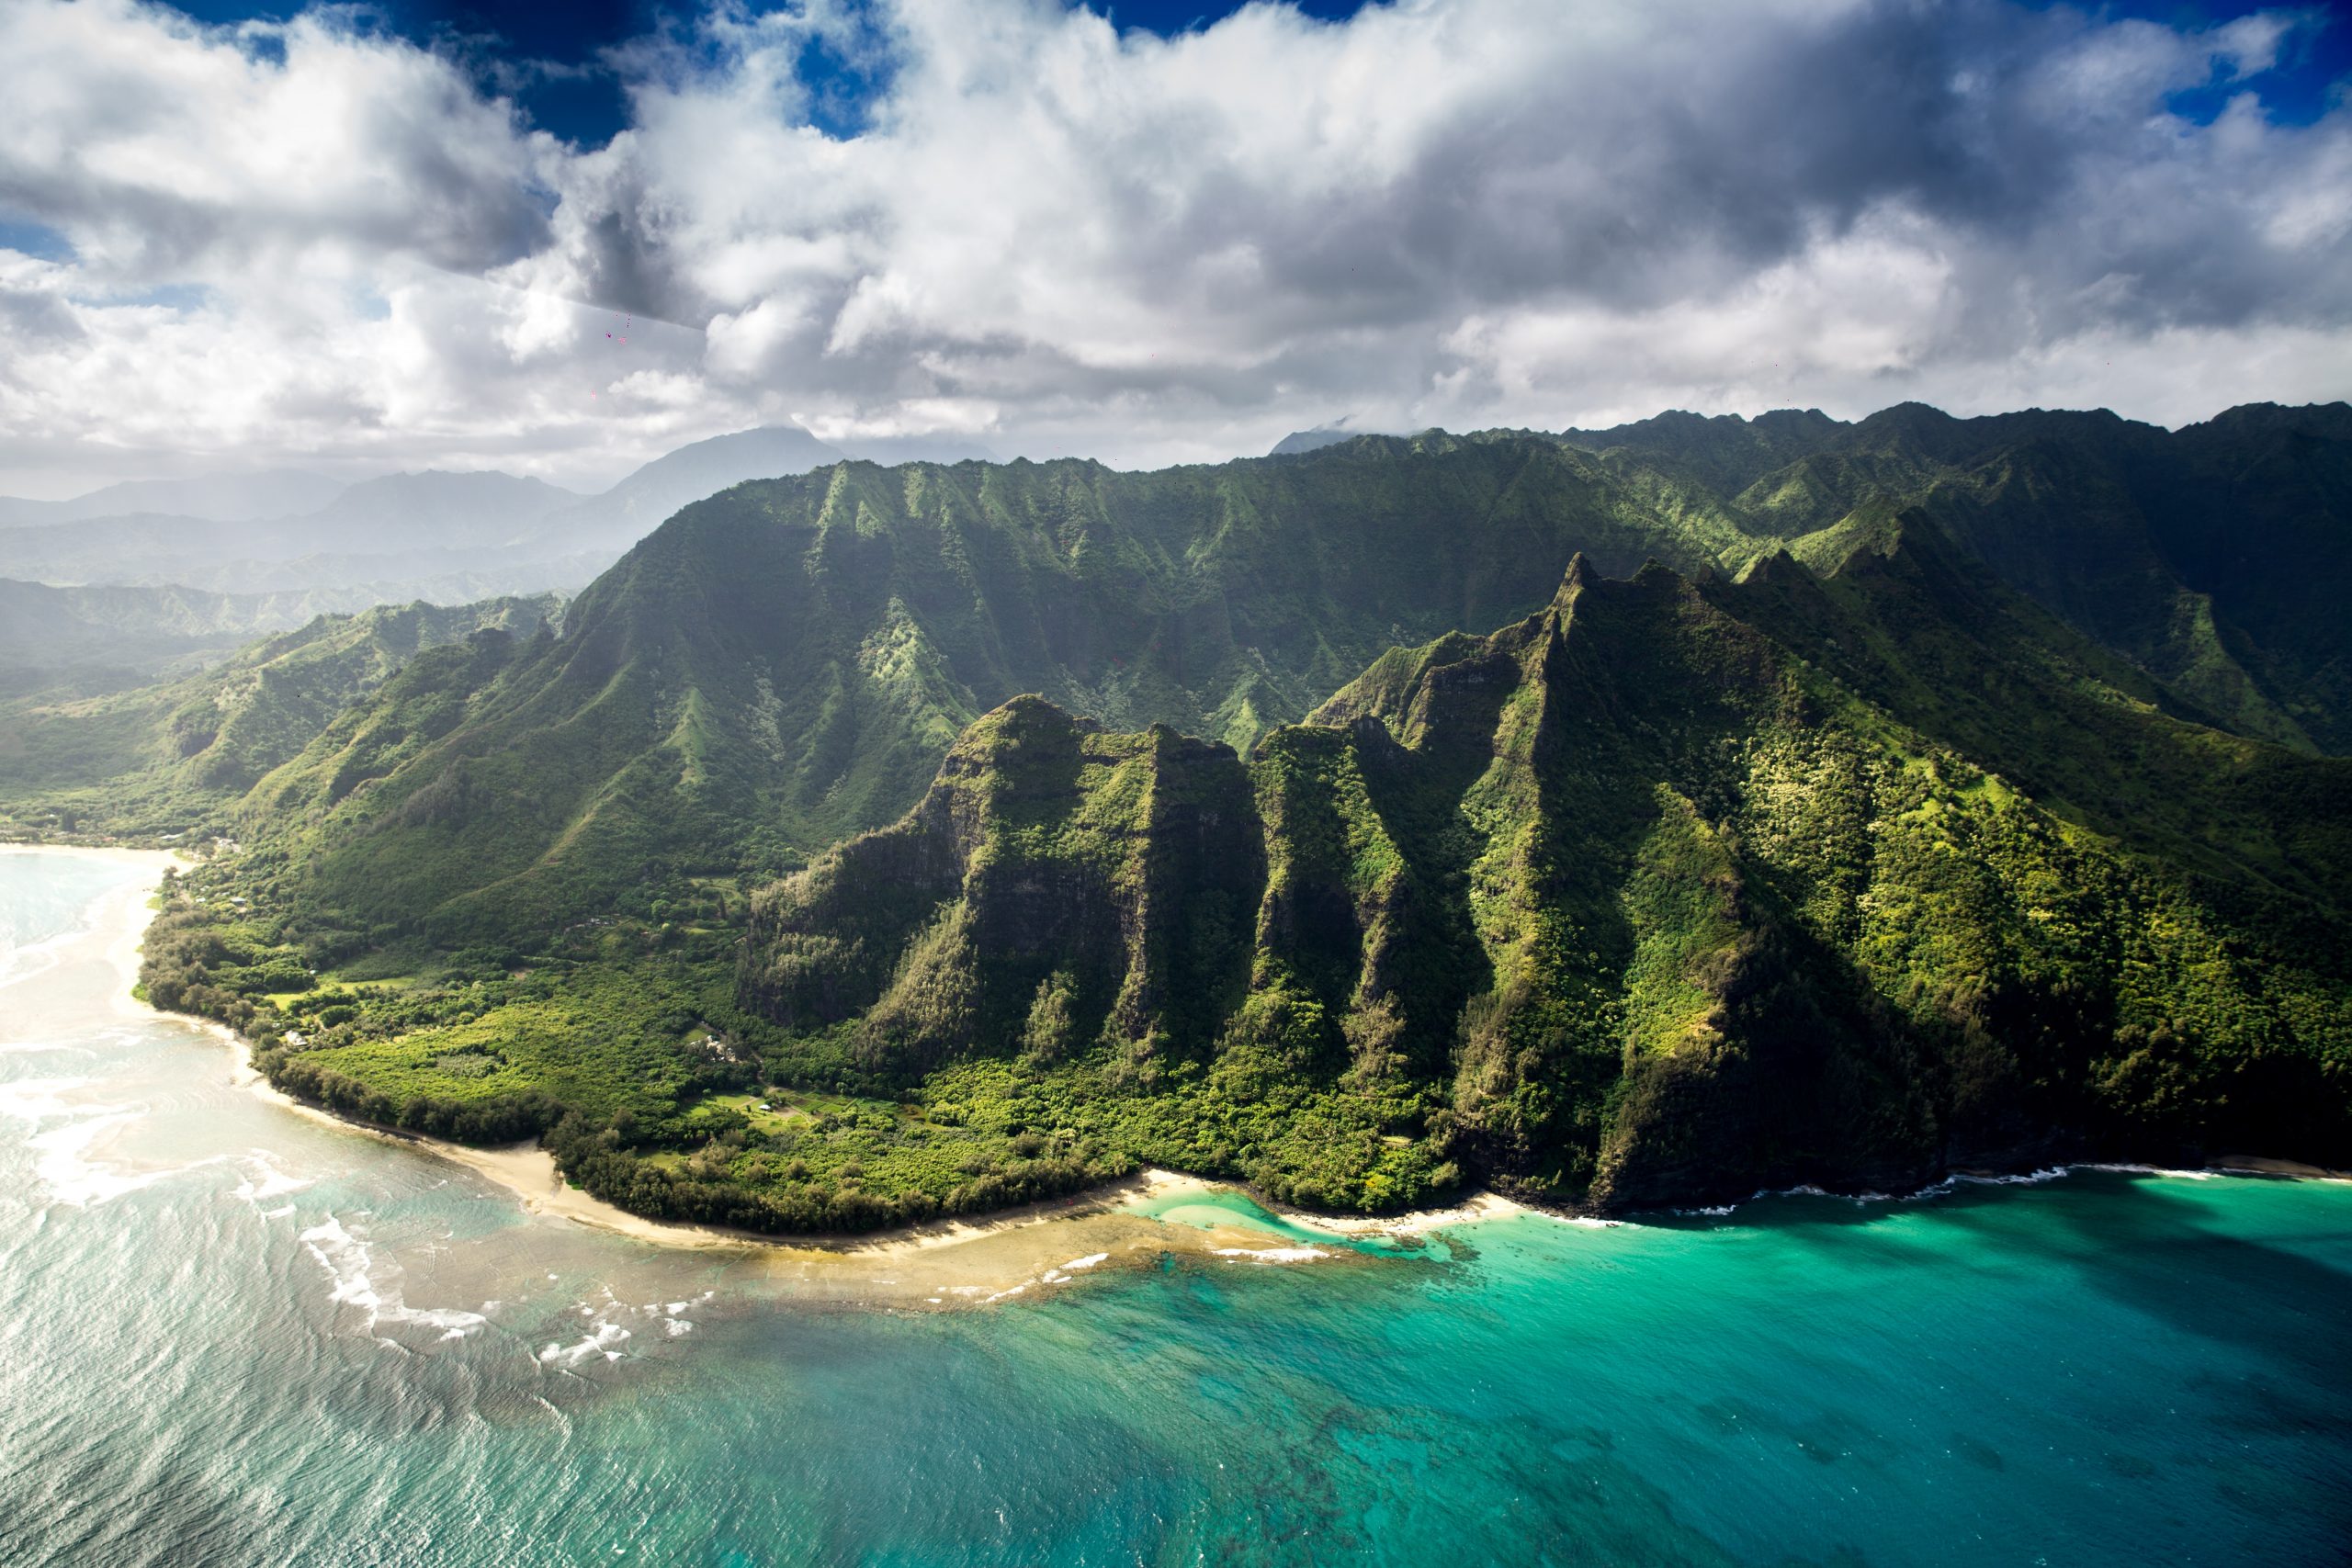 How to Travel Between Islands in Hawaii